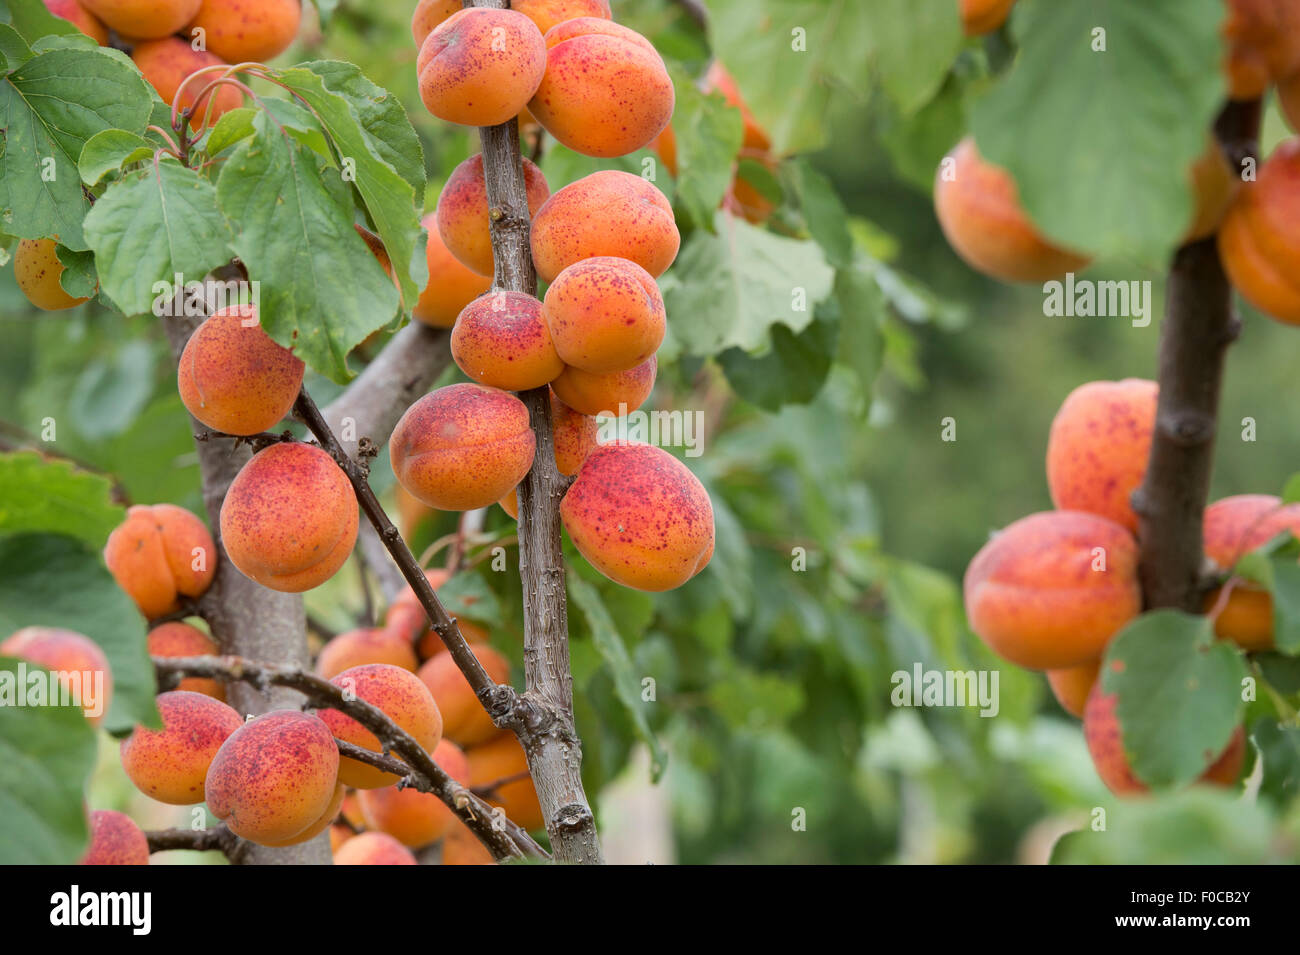 Prunus armeniaca 'Moorpark'. Apricot 'Moorpark' on the tree Stock Photo